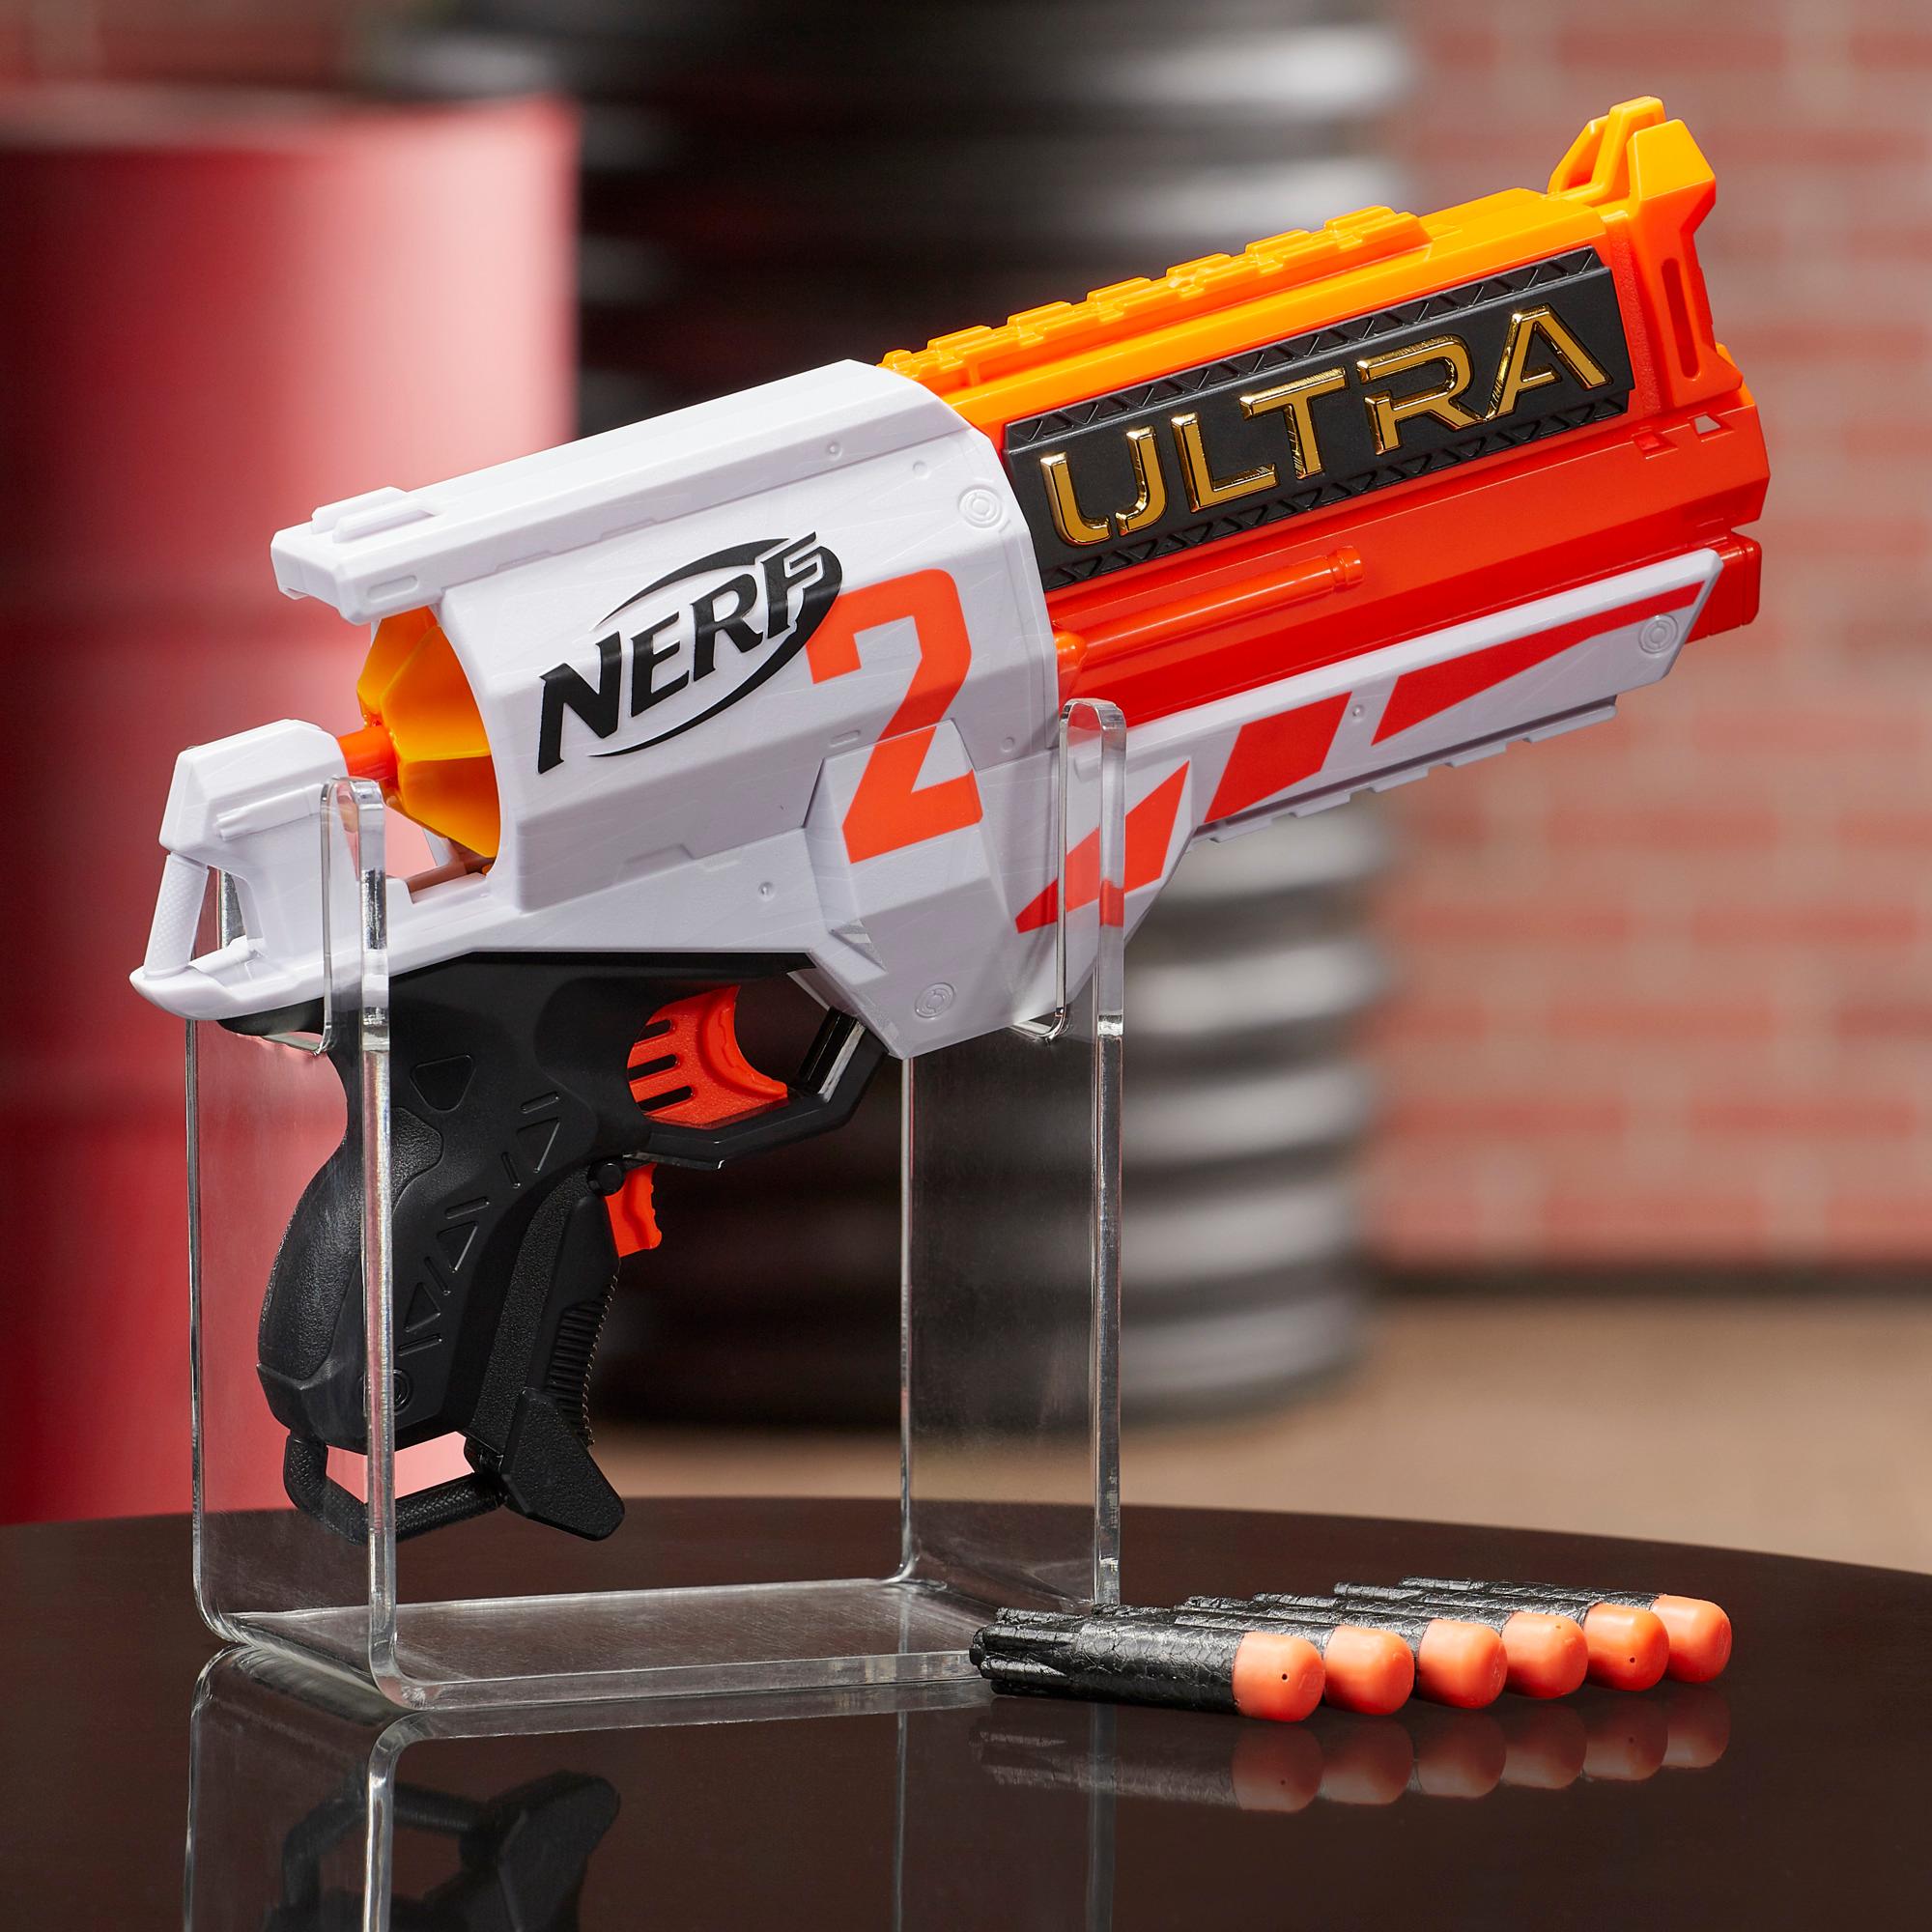 Nerf Ultra Two Blaster – schnelles Nachladen von hinten, 6 Nerf Ultra Darts – nur mit Nerf Ultra Darts kompatibel